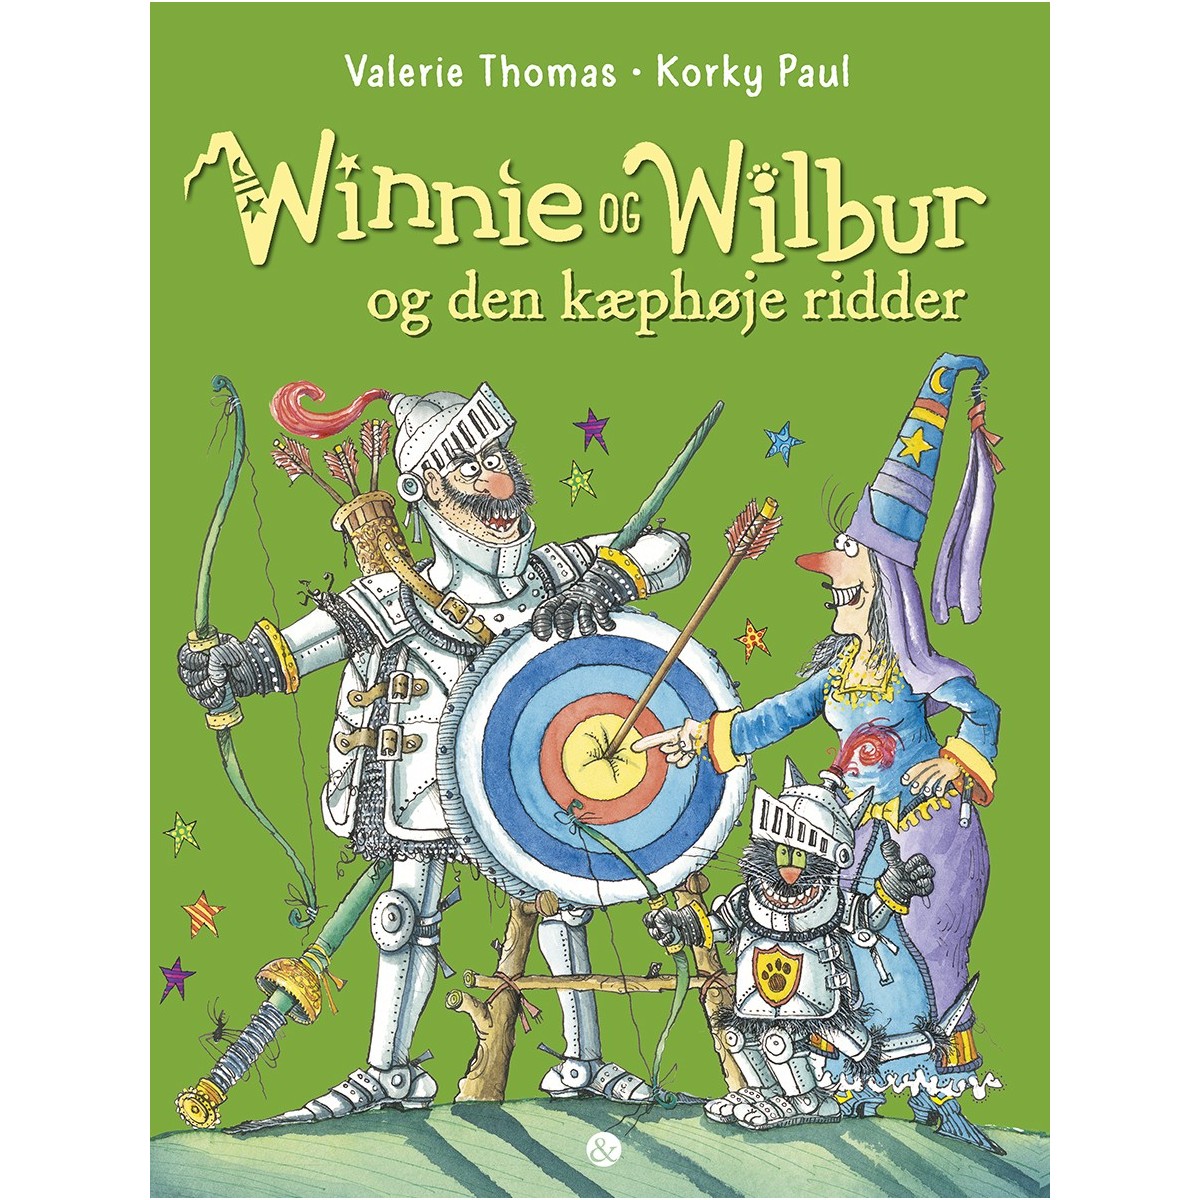 Valerie Thomas og Korky paul: Winnie og Wilbur og den kæphøje ridder